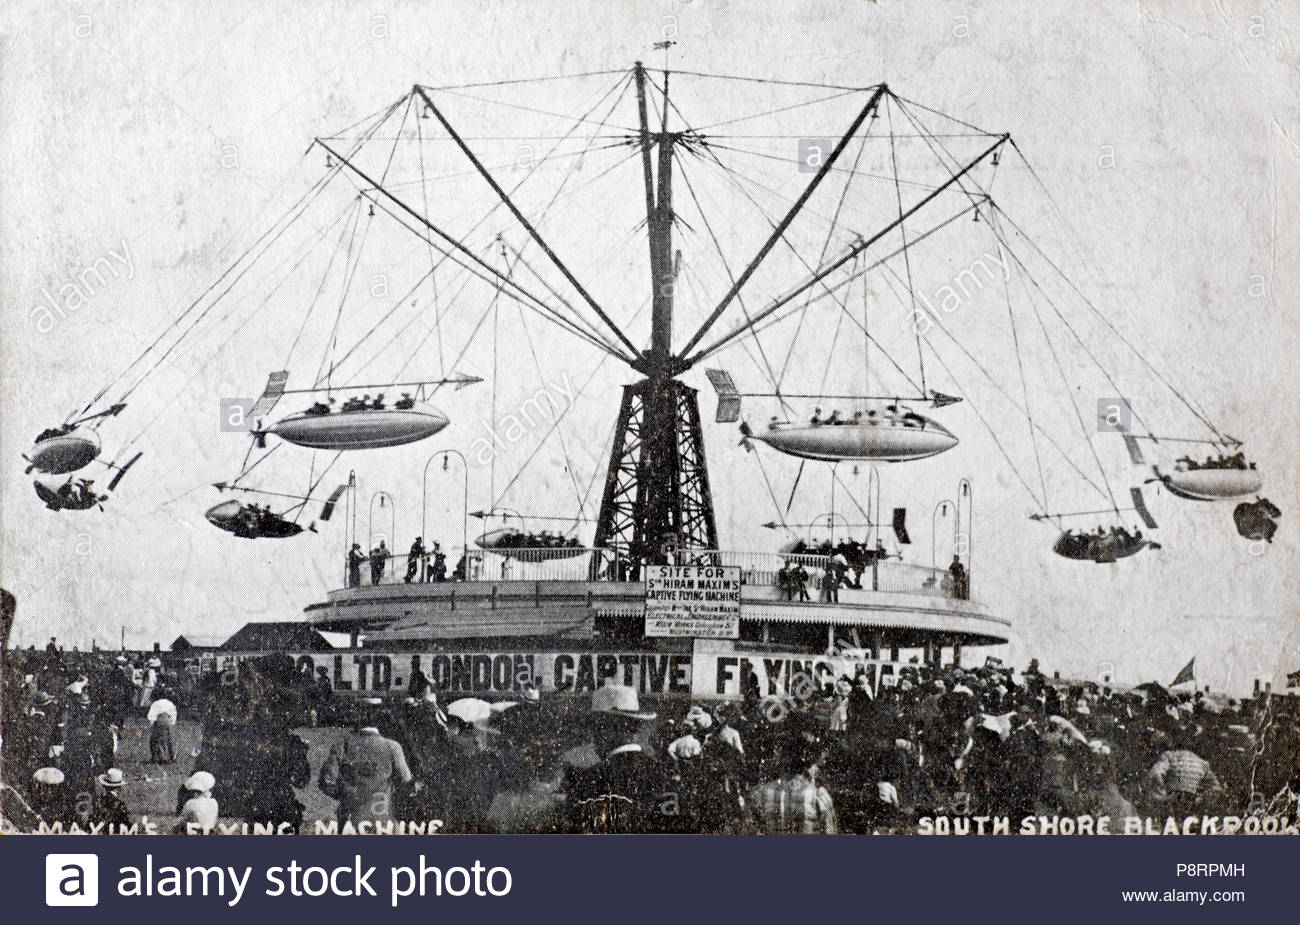 Maxim's Flying Machine, South Shore, Blackpool vintage carte postale de 1904 Banque D'Images